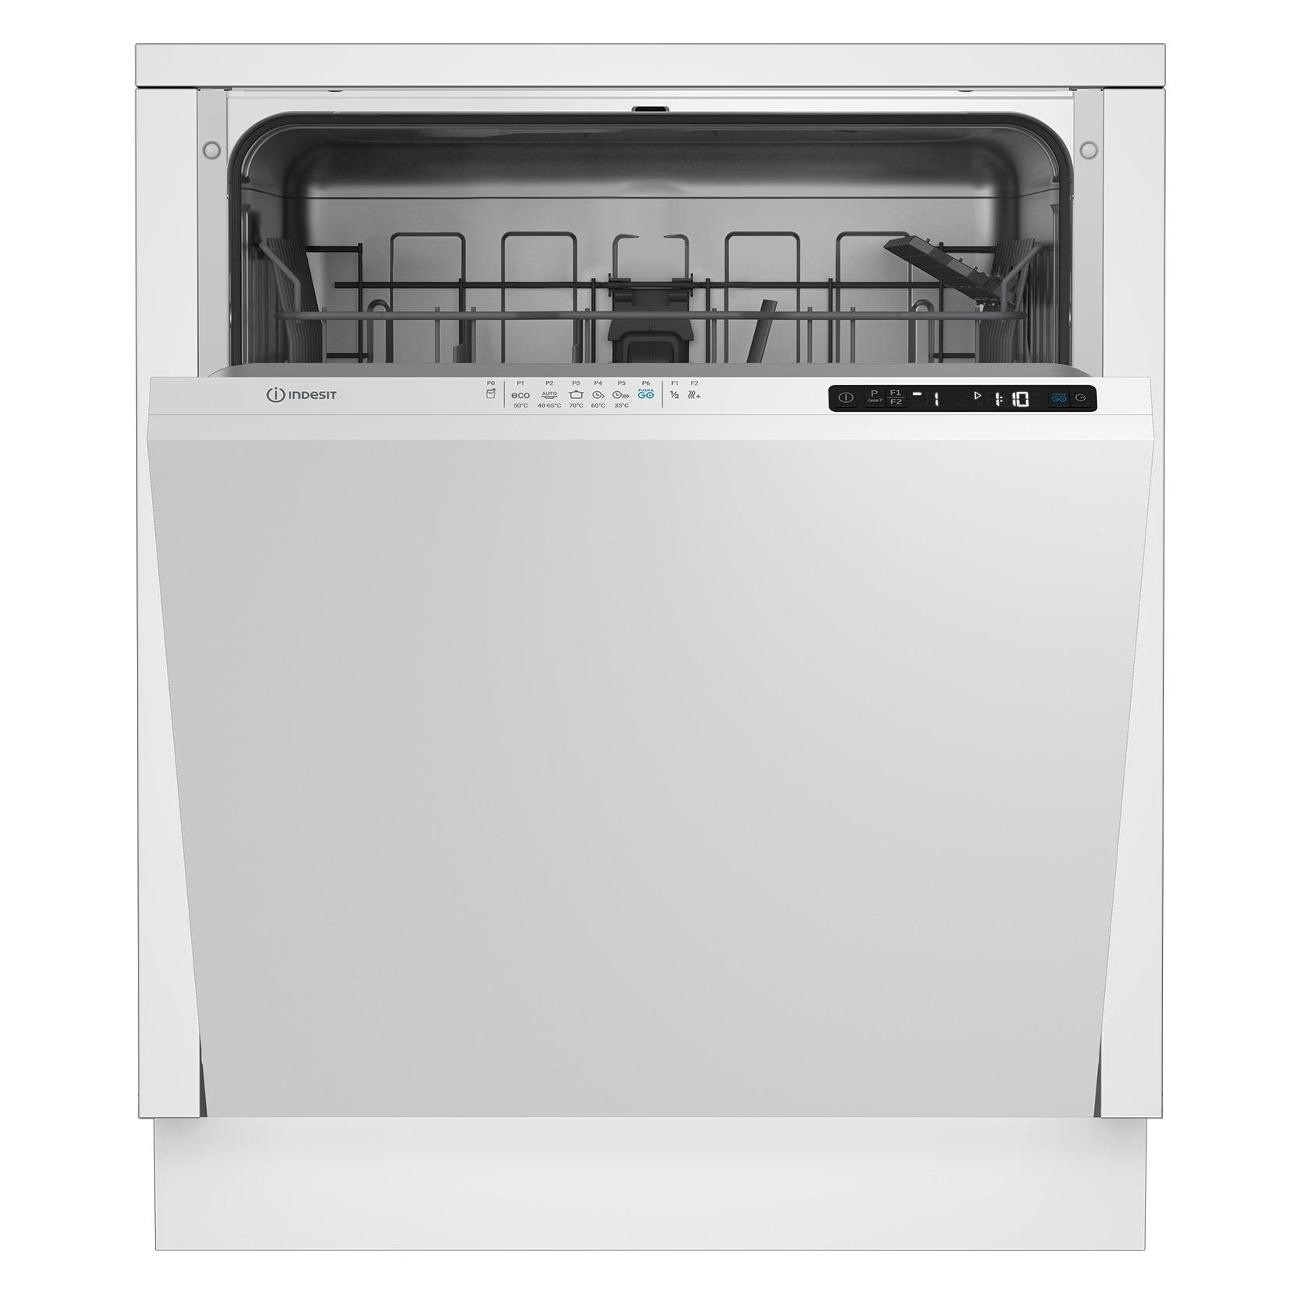 Встраиваемая посудомоечная машина Indesit DI 4C68 встраиваемая посудомоечная машина indesit di 4c68 ae